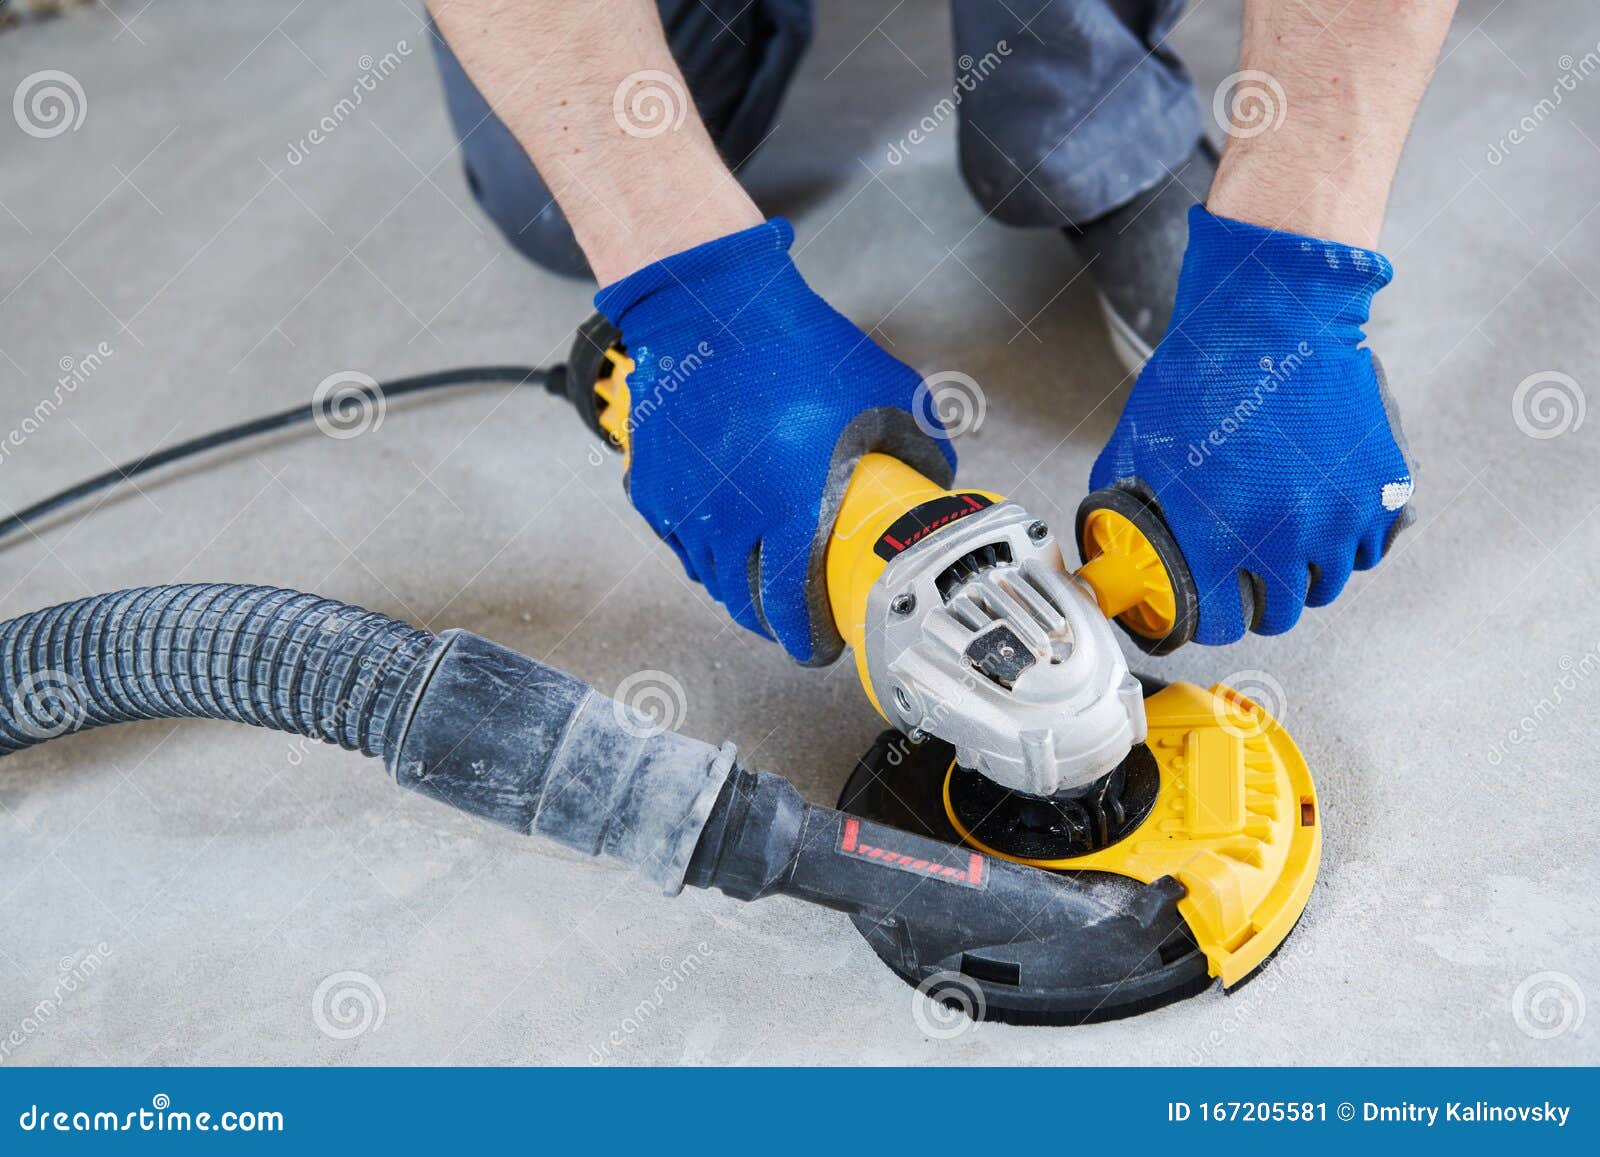 floor-concrete-reinforcement-at-warehouse-construction-site-stock-photo